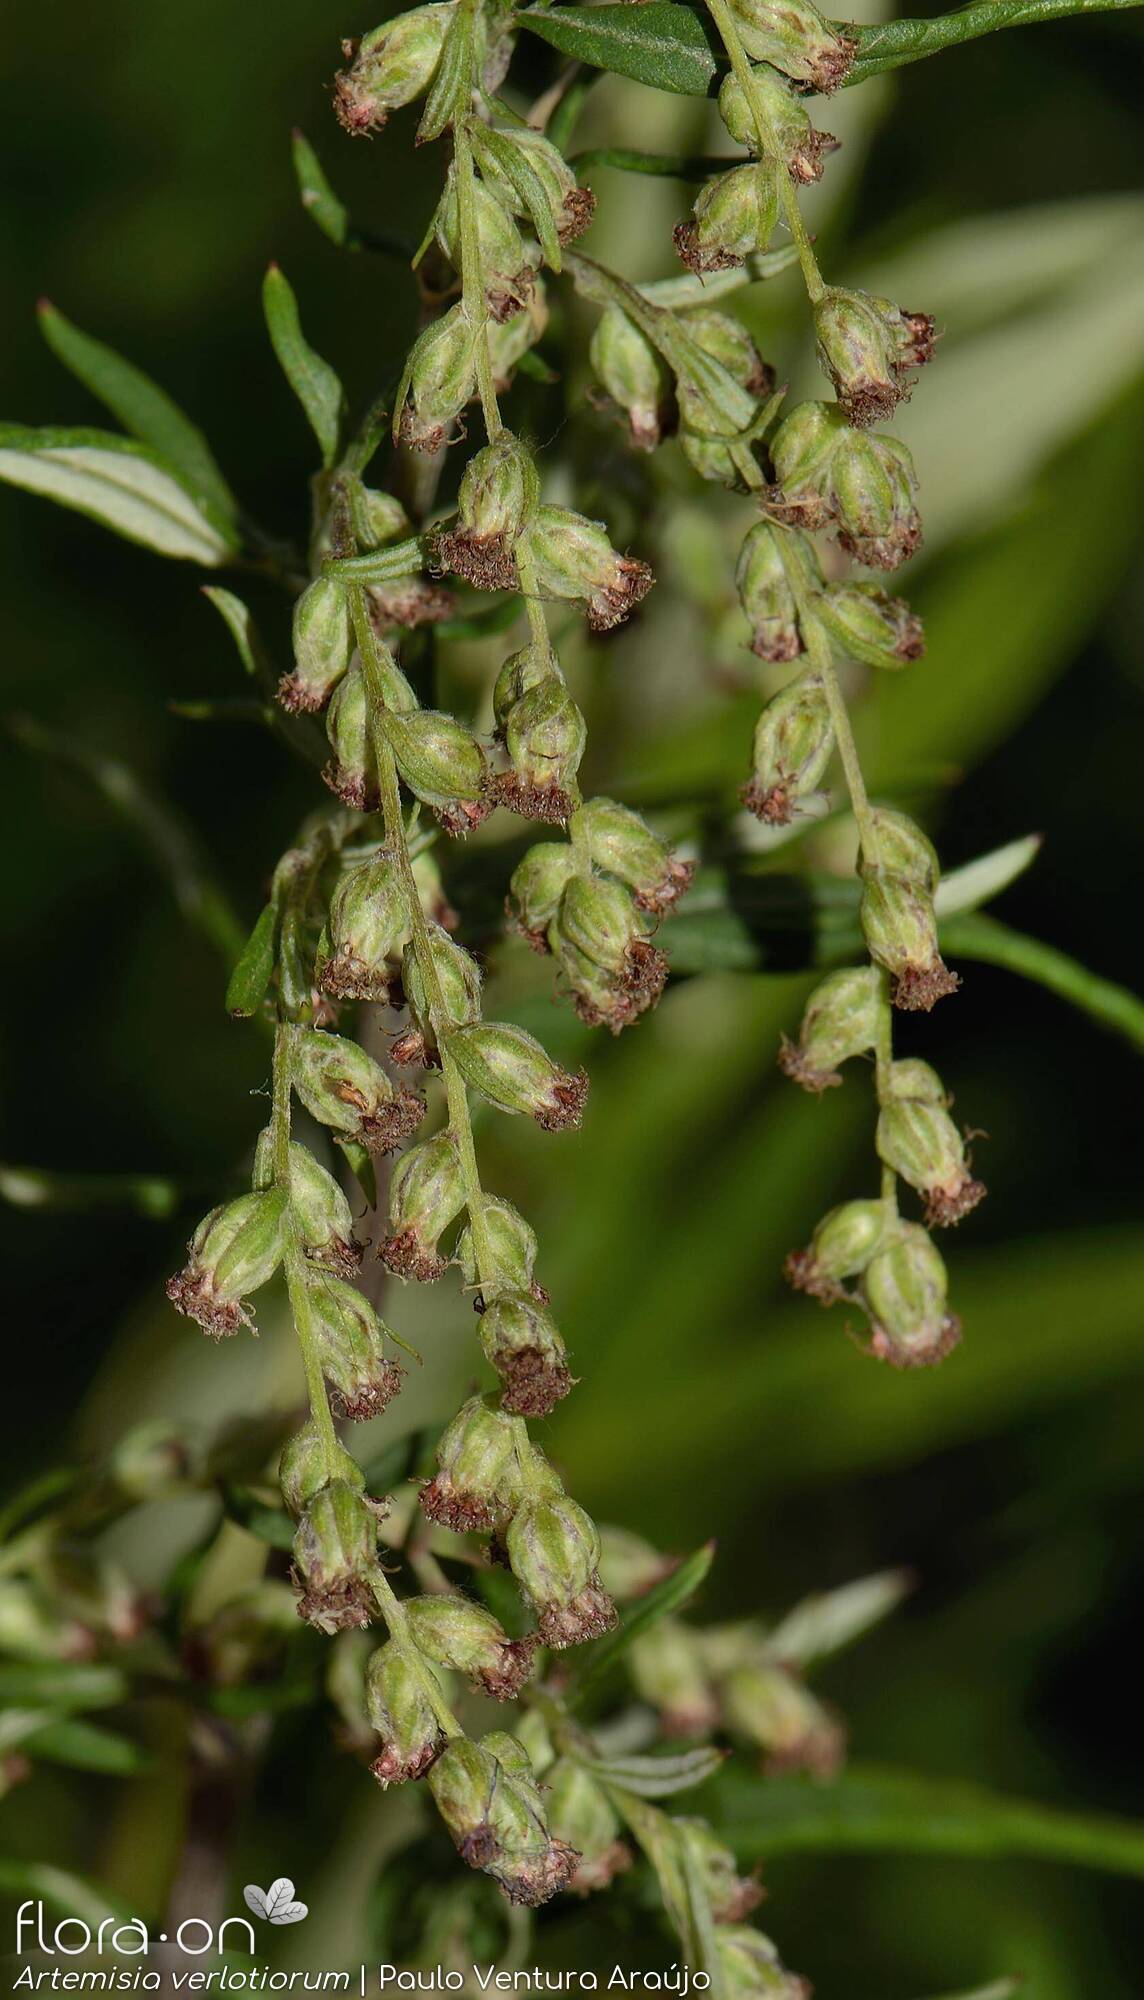 Artemisia verlotiorum - Flor (geral) | Paulo Ventura Araújo; CC BY-NC 4.0